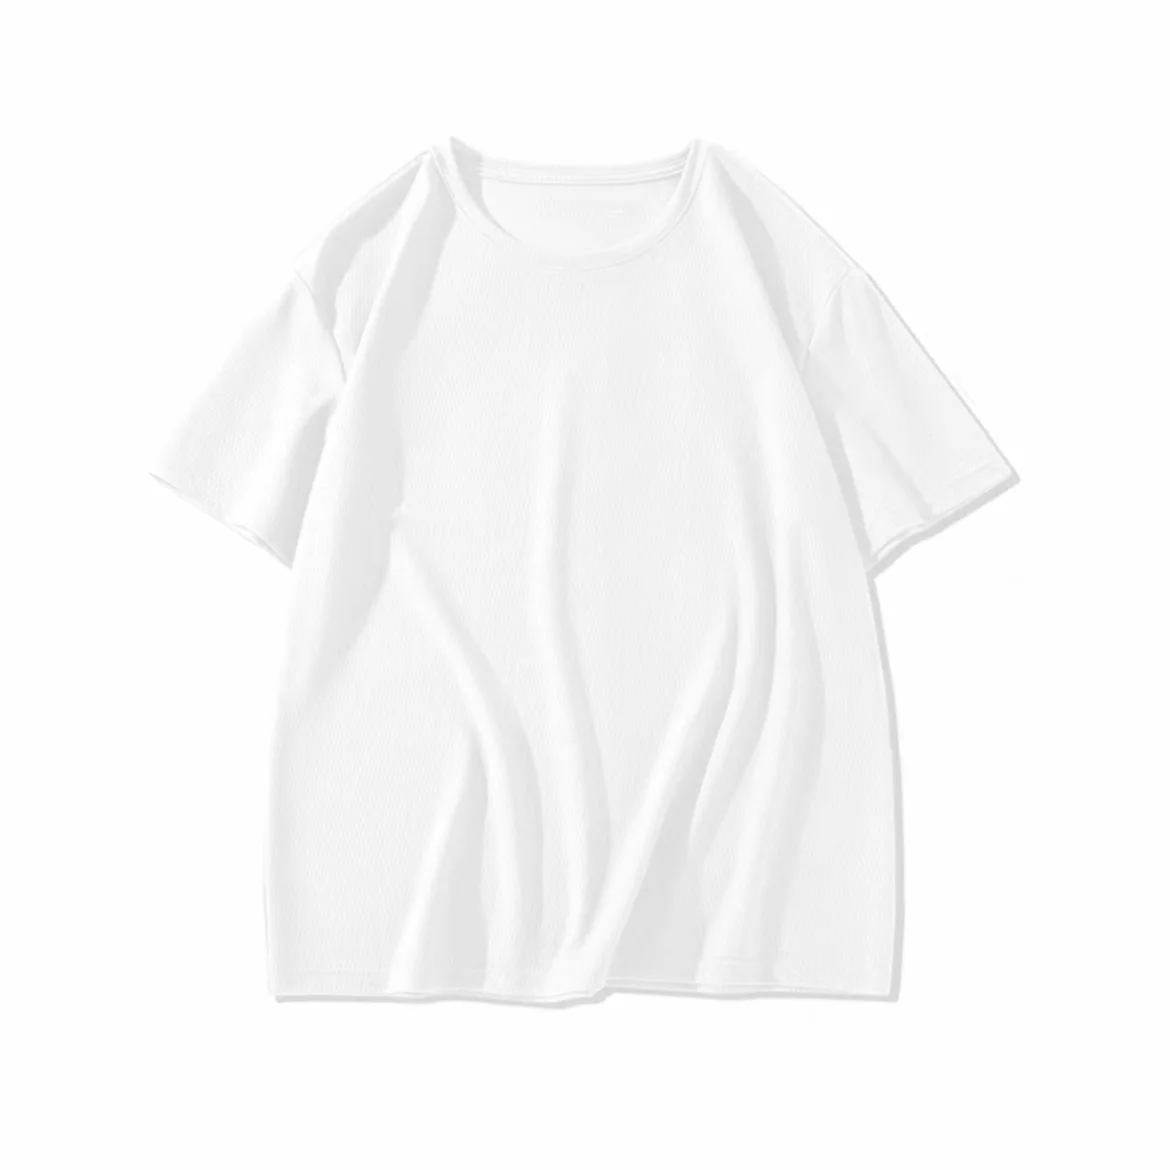 Сетчатая футболка NIGO с коротким рукавом #nigo94799